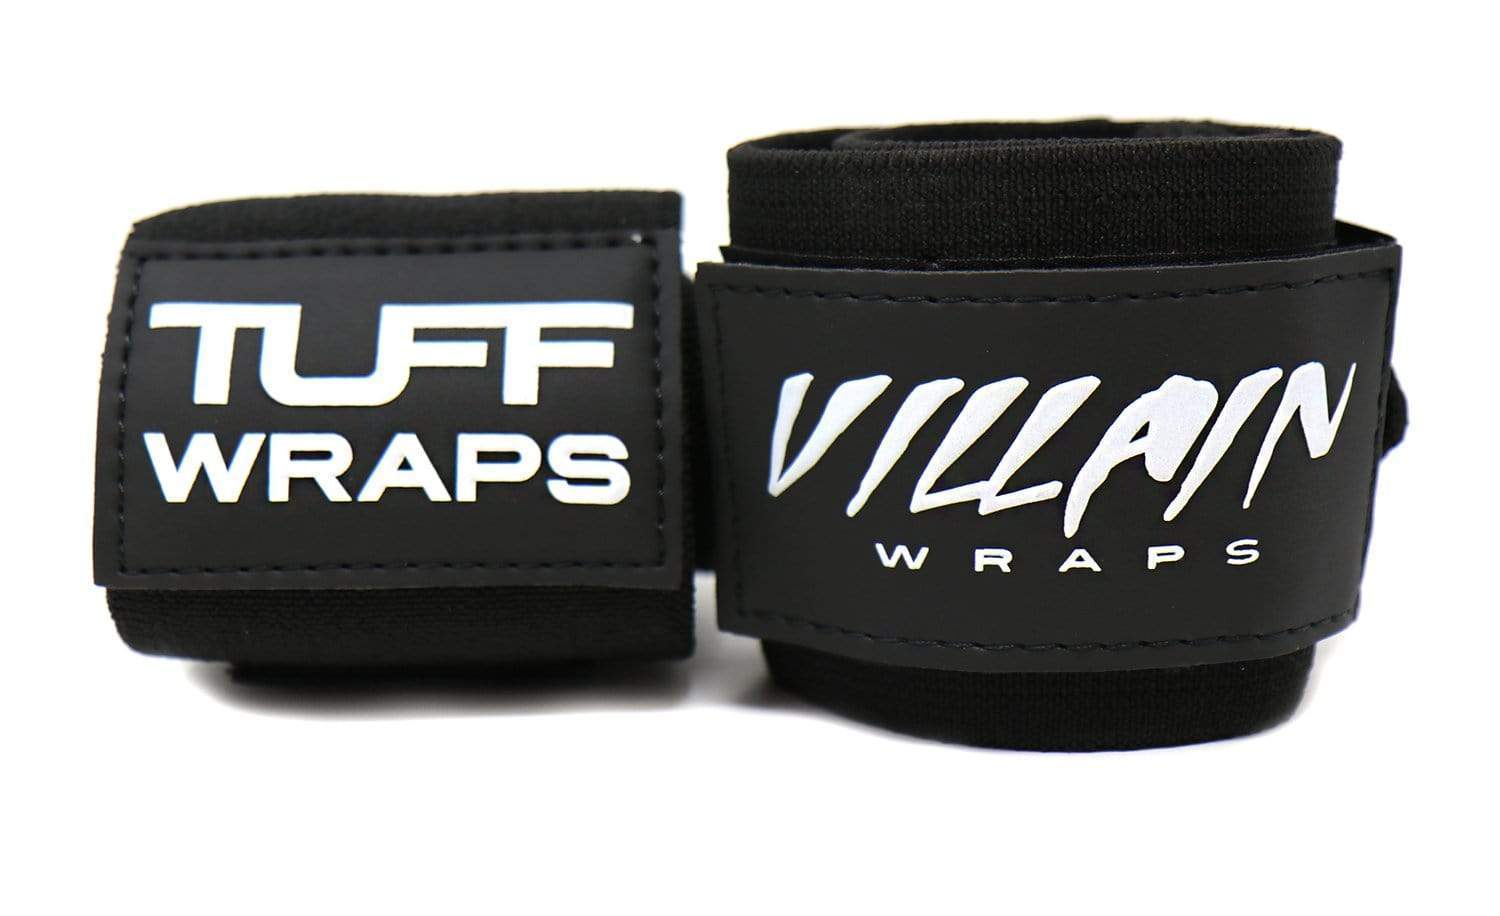 All Black Villain "STIFF" Wrist Wraps 24" Wrist Wraps